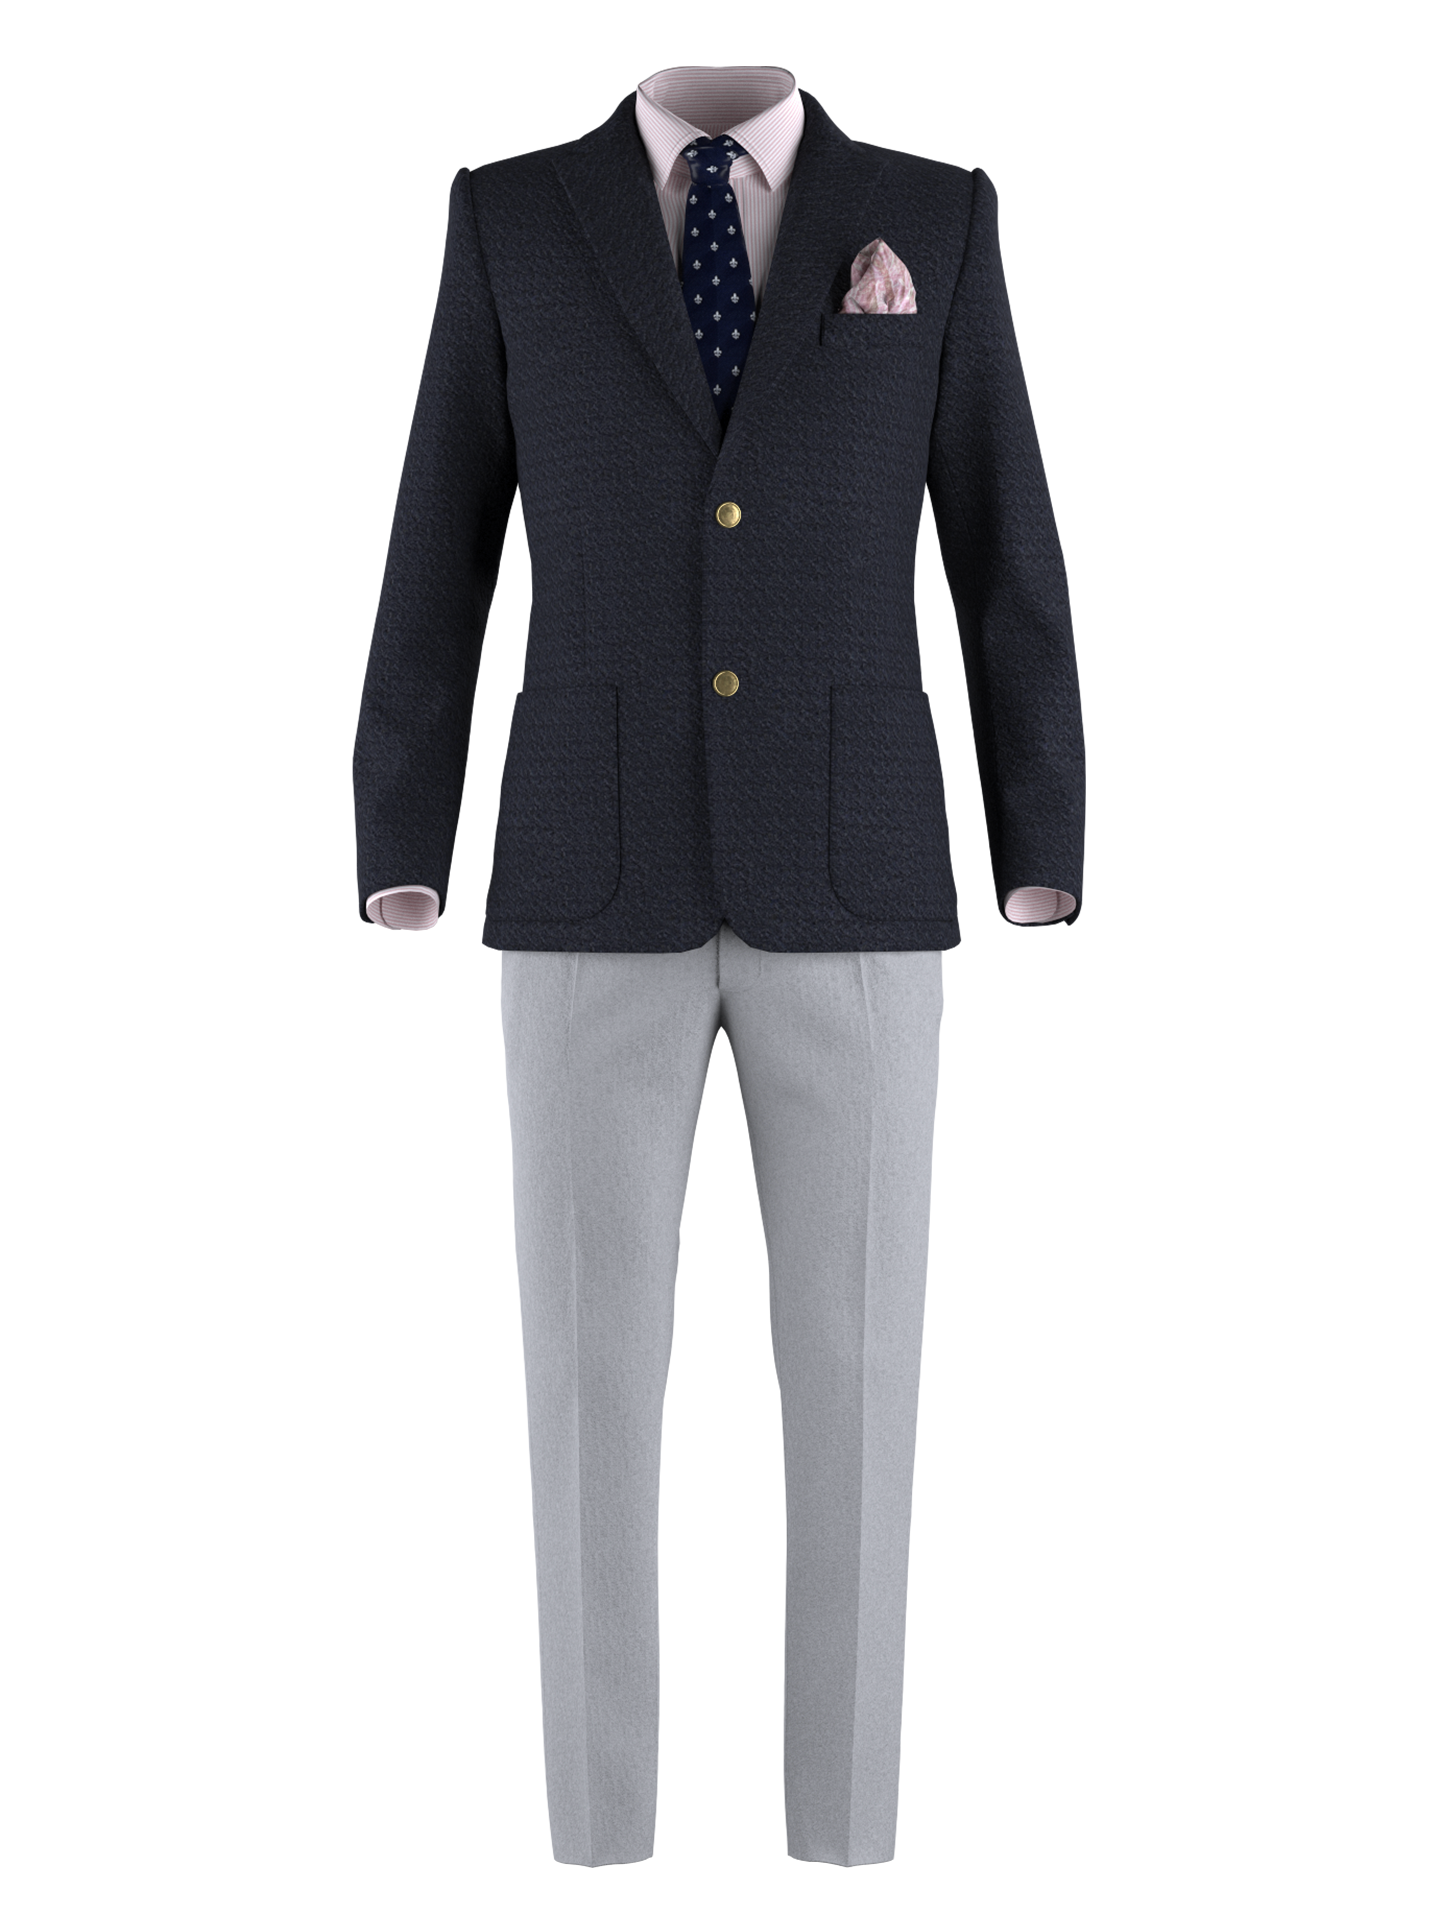 Business Casual Suit – DRESSX / More Dash Inc. dba DRESSX